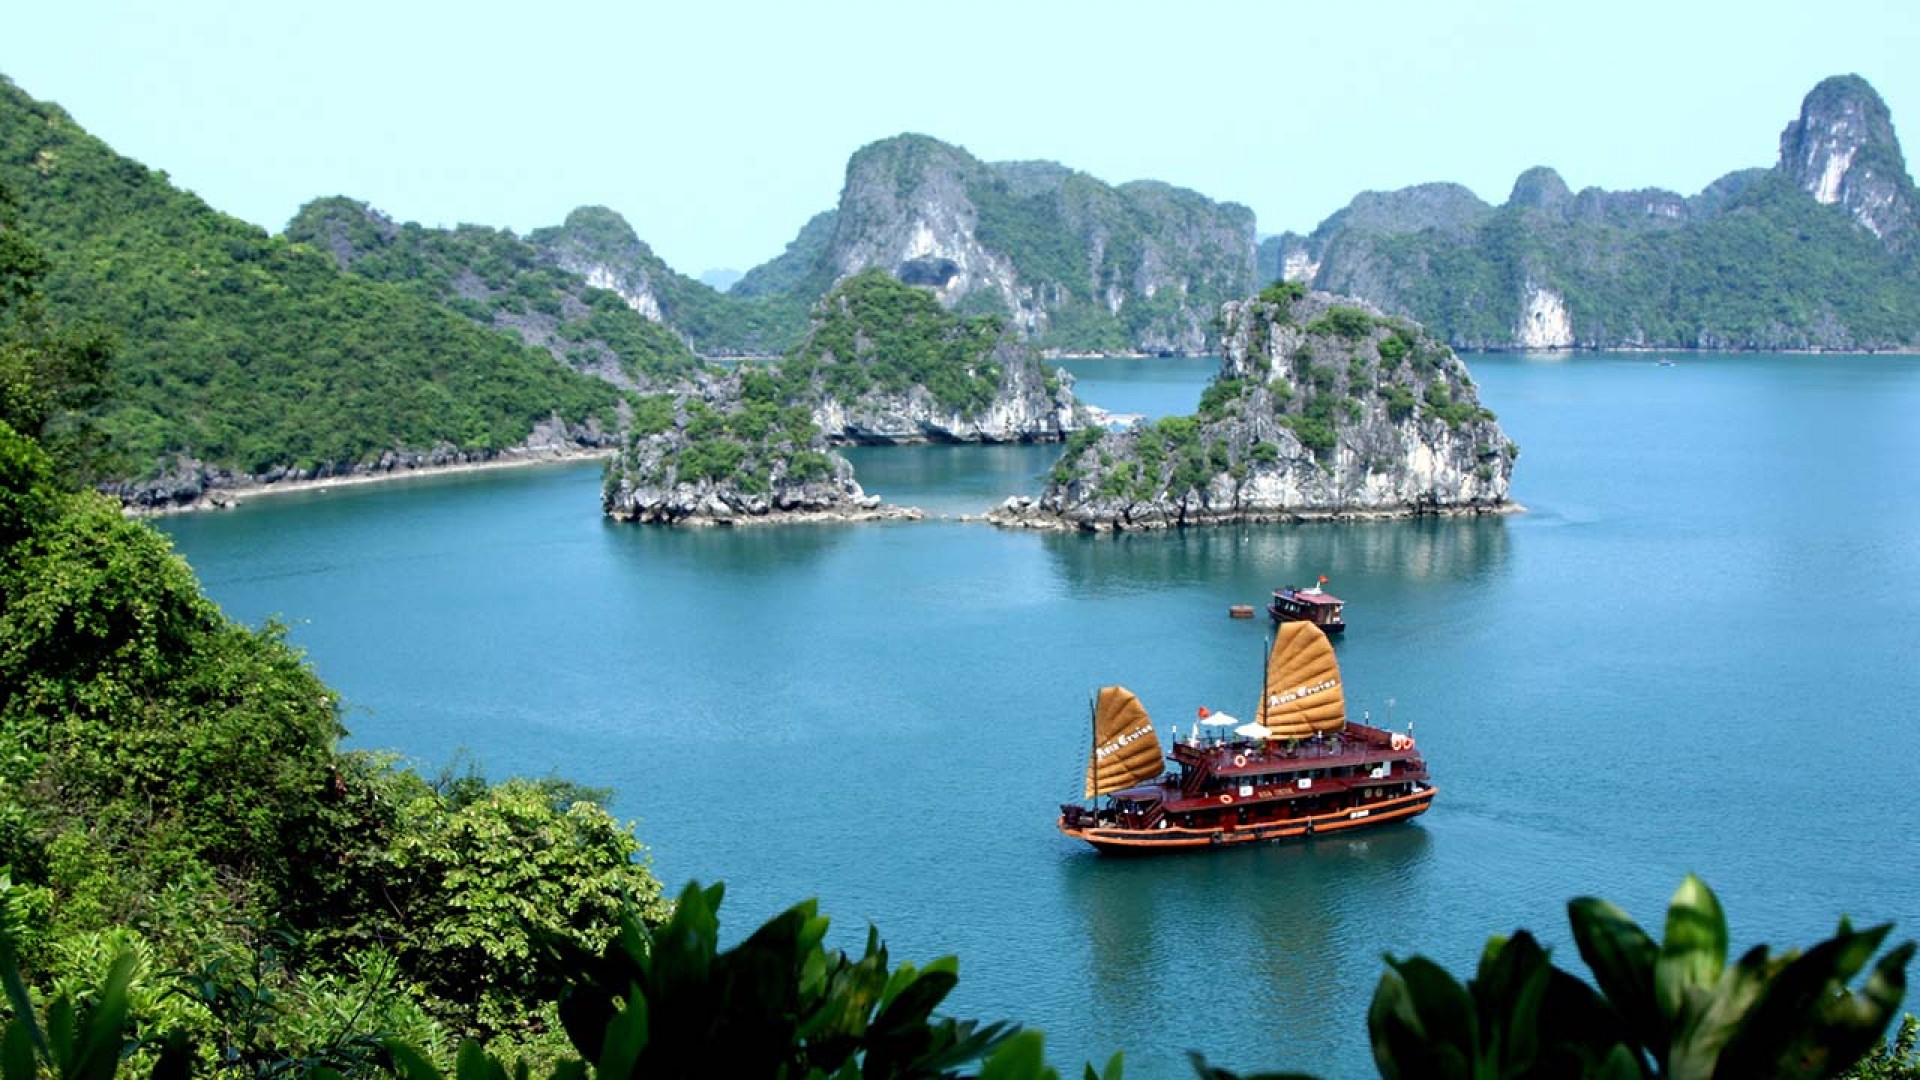 Giới thiệu về du lịch Việt Nam bằng tiếng Anh: đưa xứ sở “Rồng Tiên ...